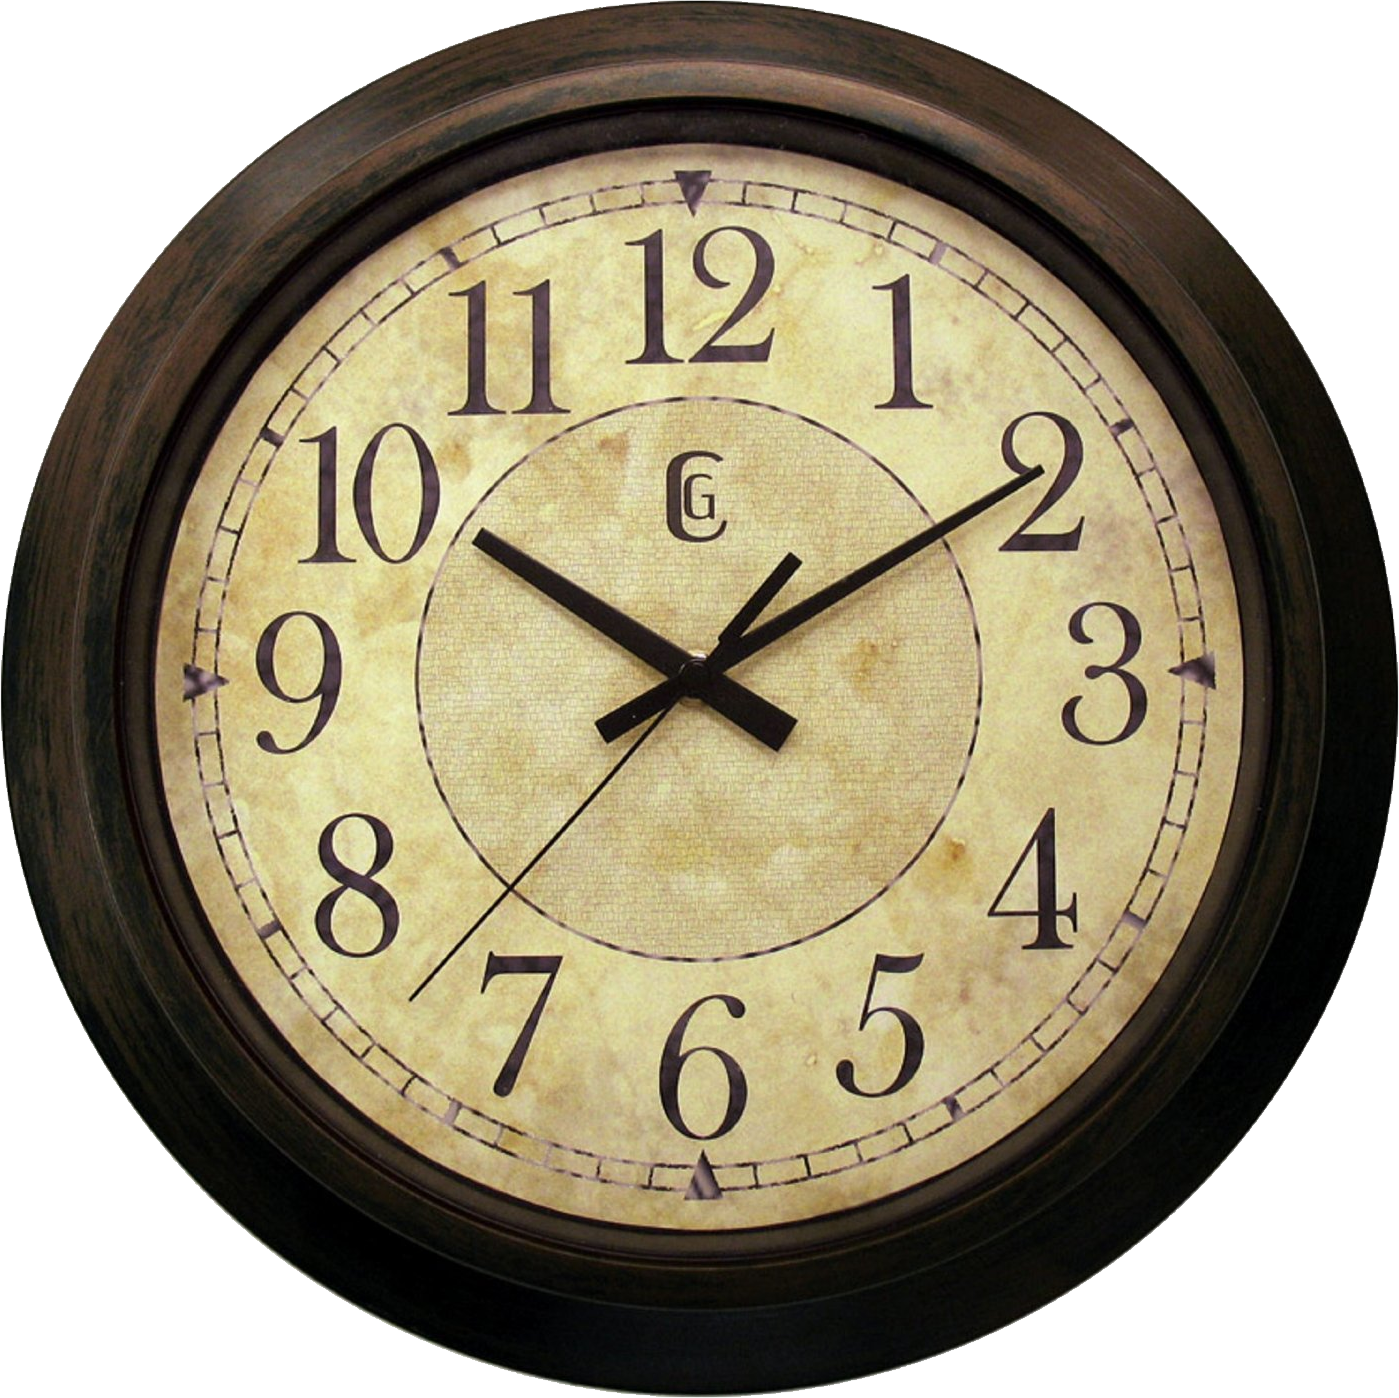 Wall clock PNG image